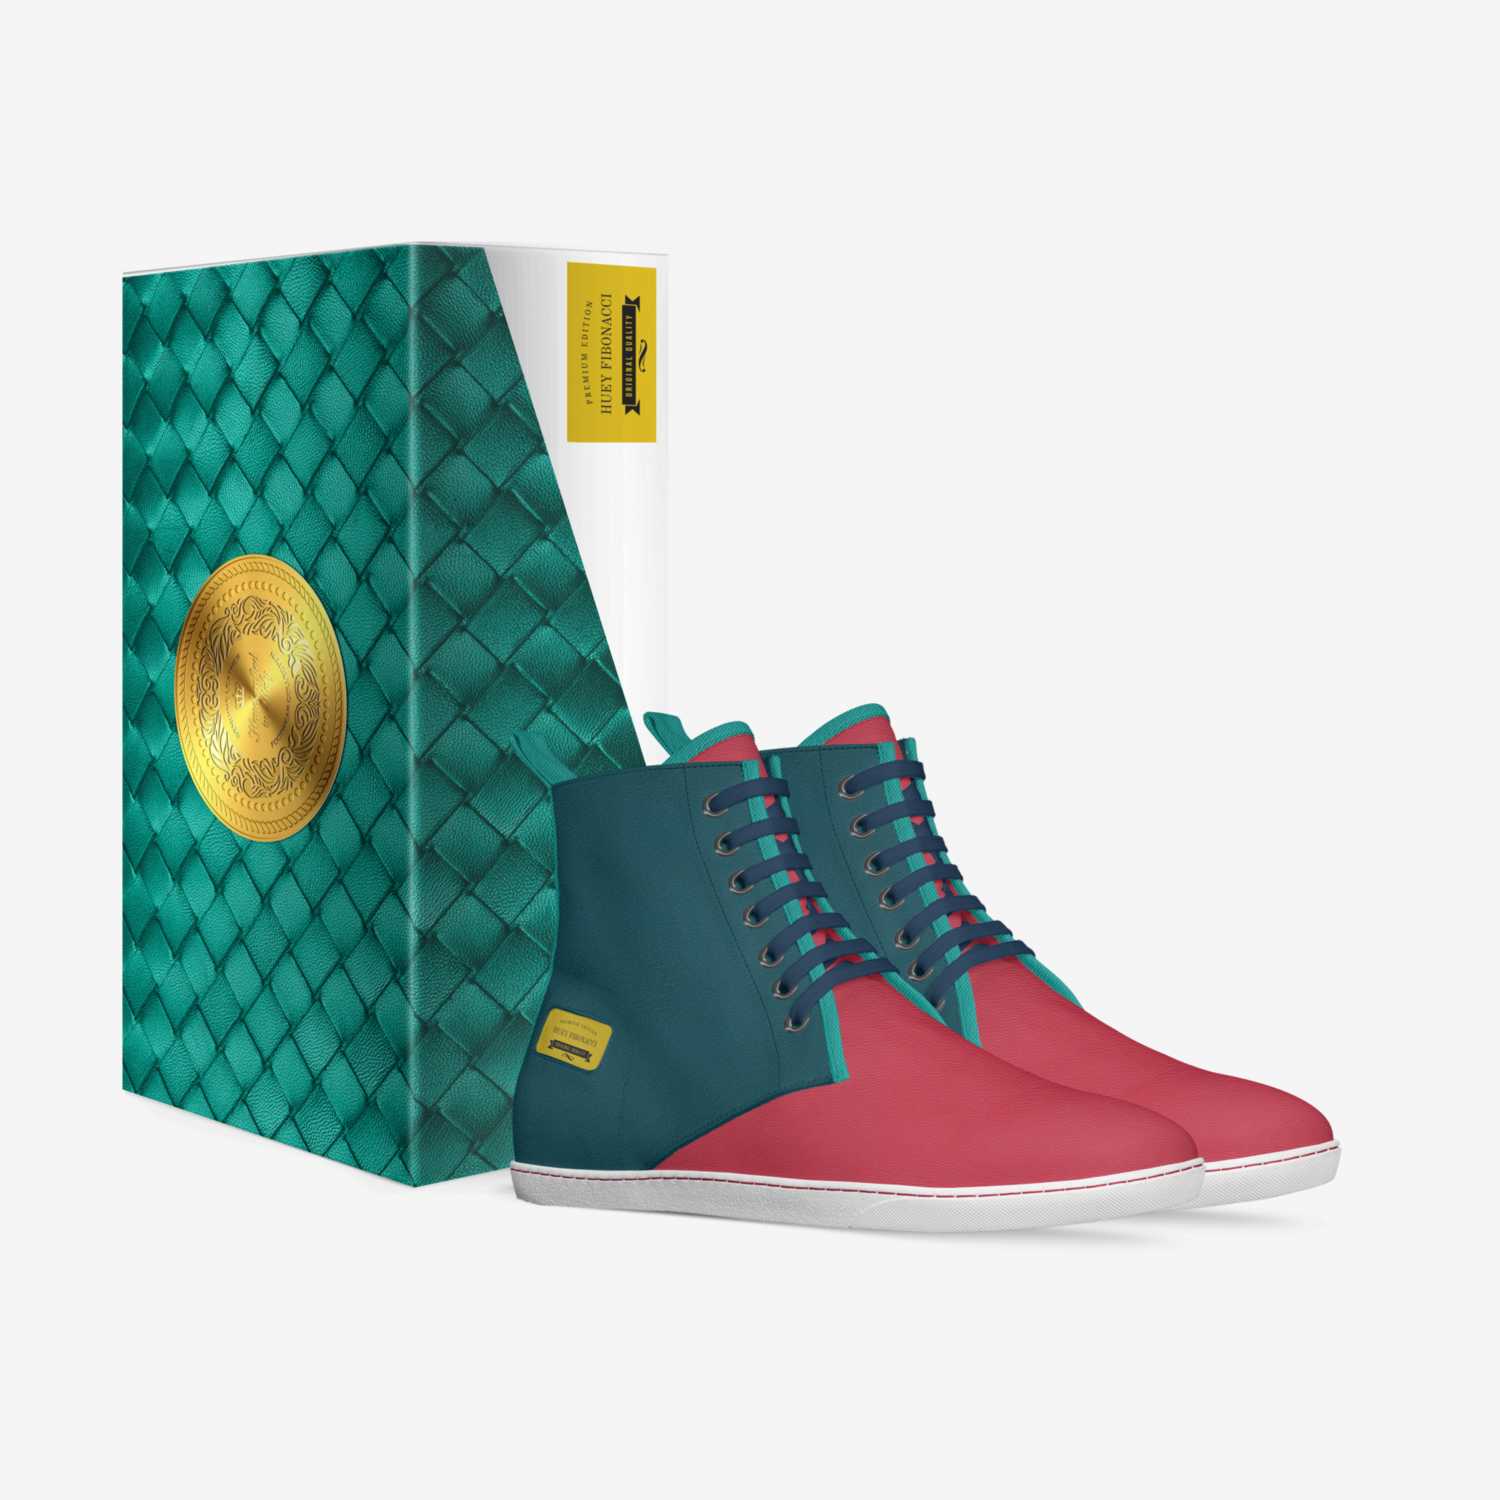 HUEY FIBONACCI custom made in Italy shoes by Jarrisha Fibonacci | Box view